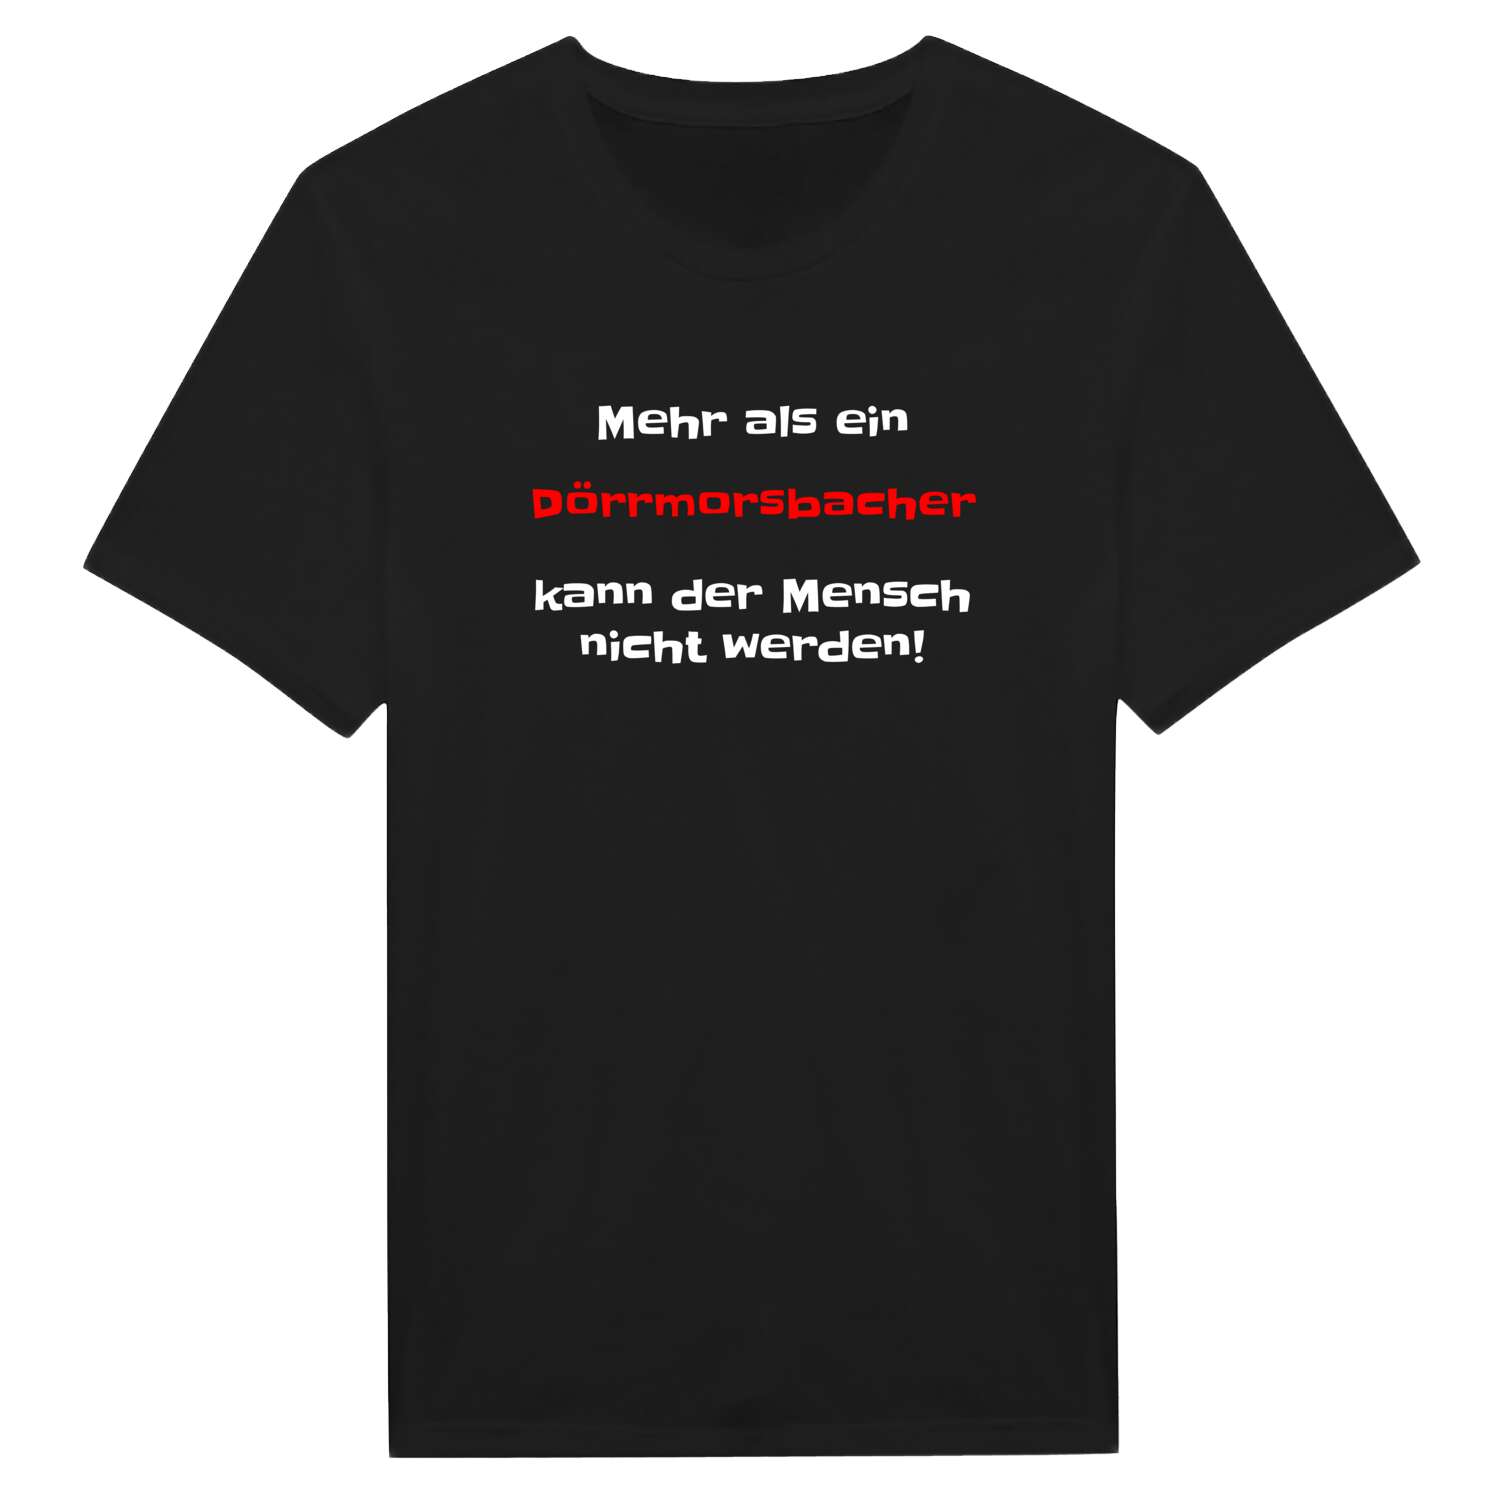 Dörrmorsbach T-Shirt »Mehr als ein«